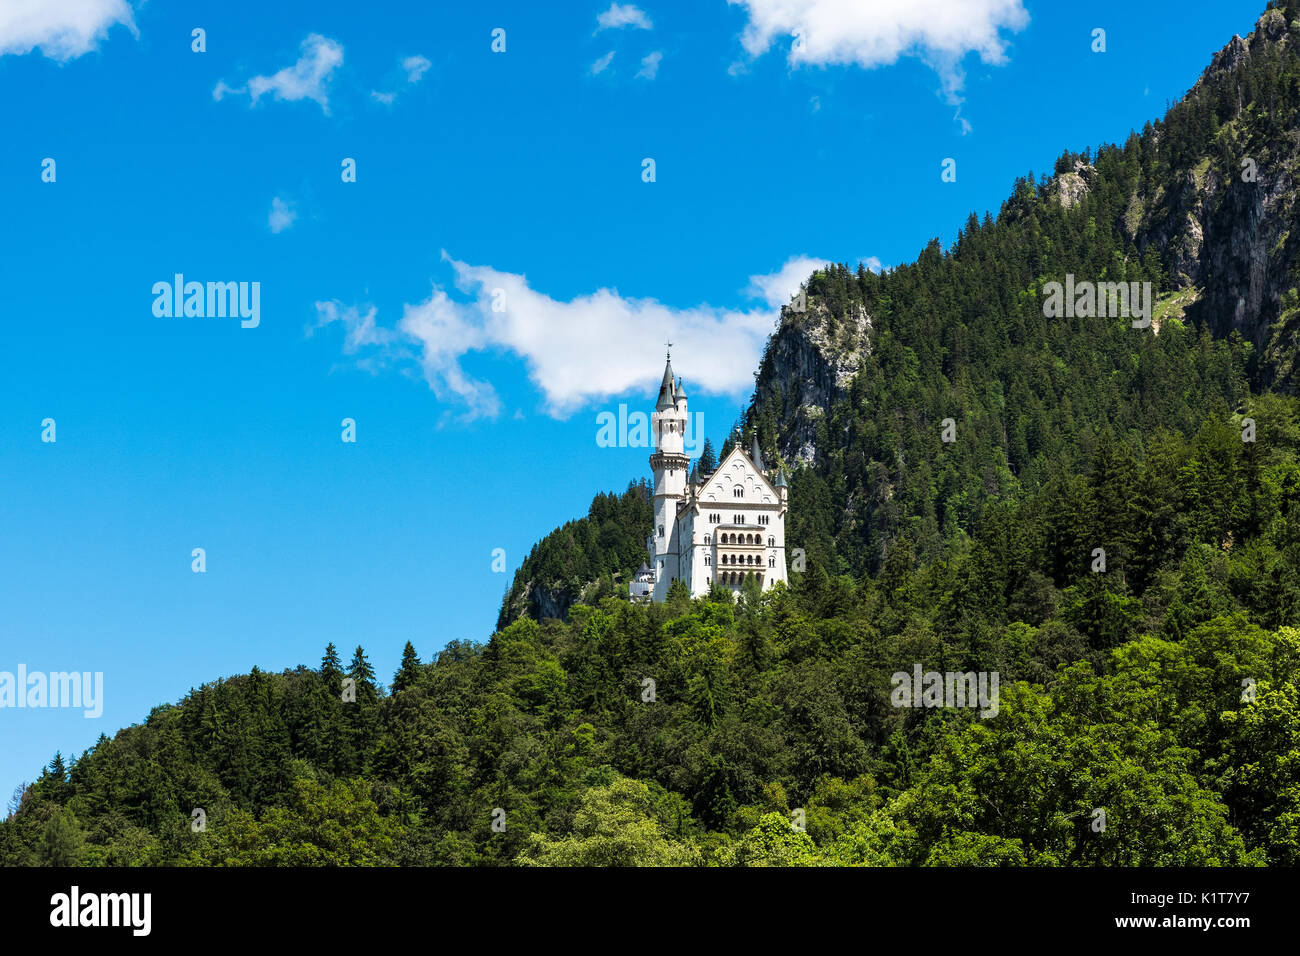 Schloss Neuschwanstein ist eine sehr berühmte Schloss Position auf einem Hügel über der deutschen Stadt in der Nähe von Hohenschwangau Füssen im bayerischen Raum von Deutschland Stockfoto